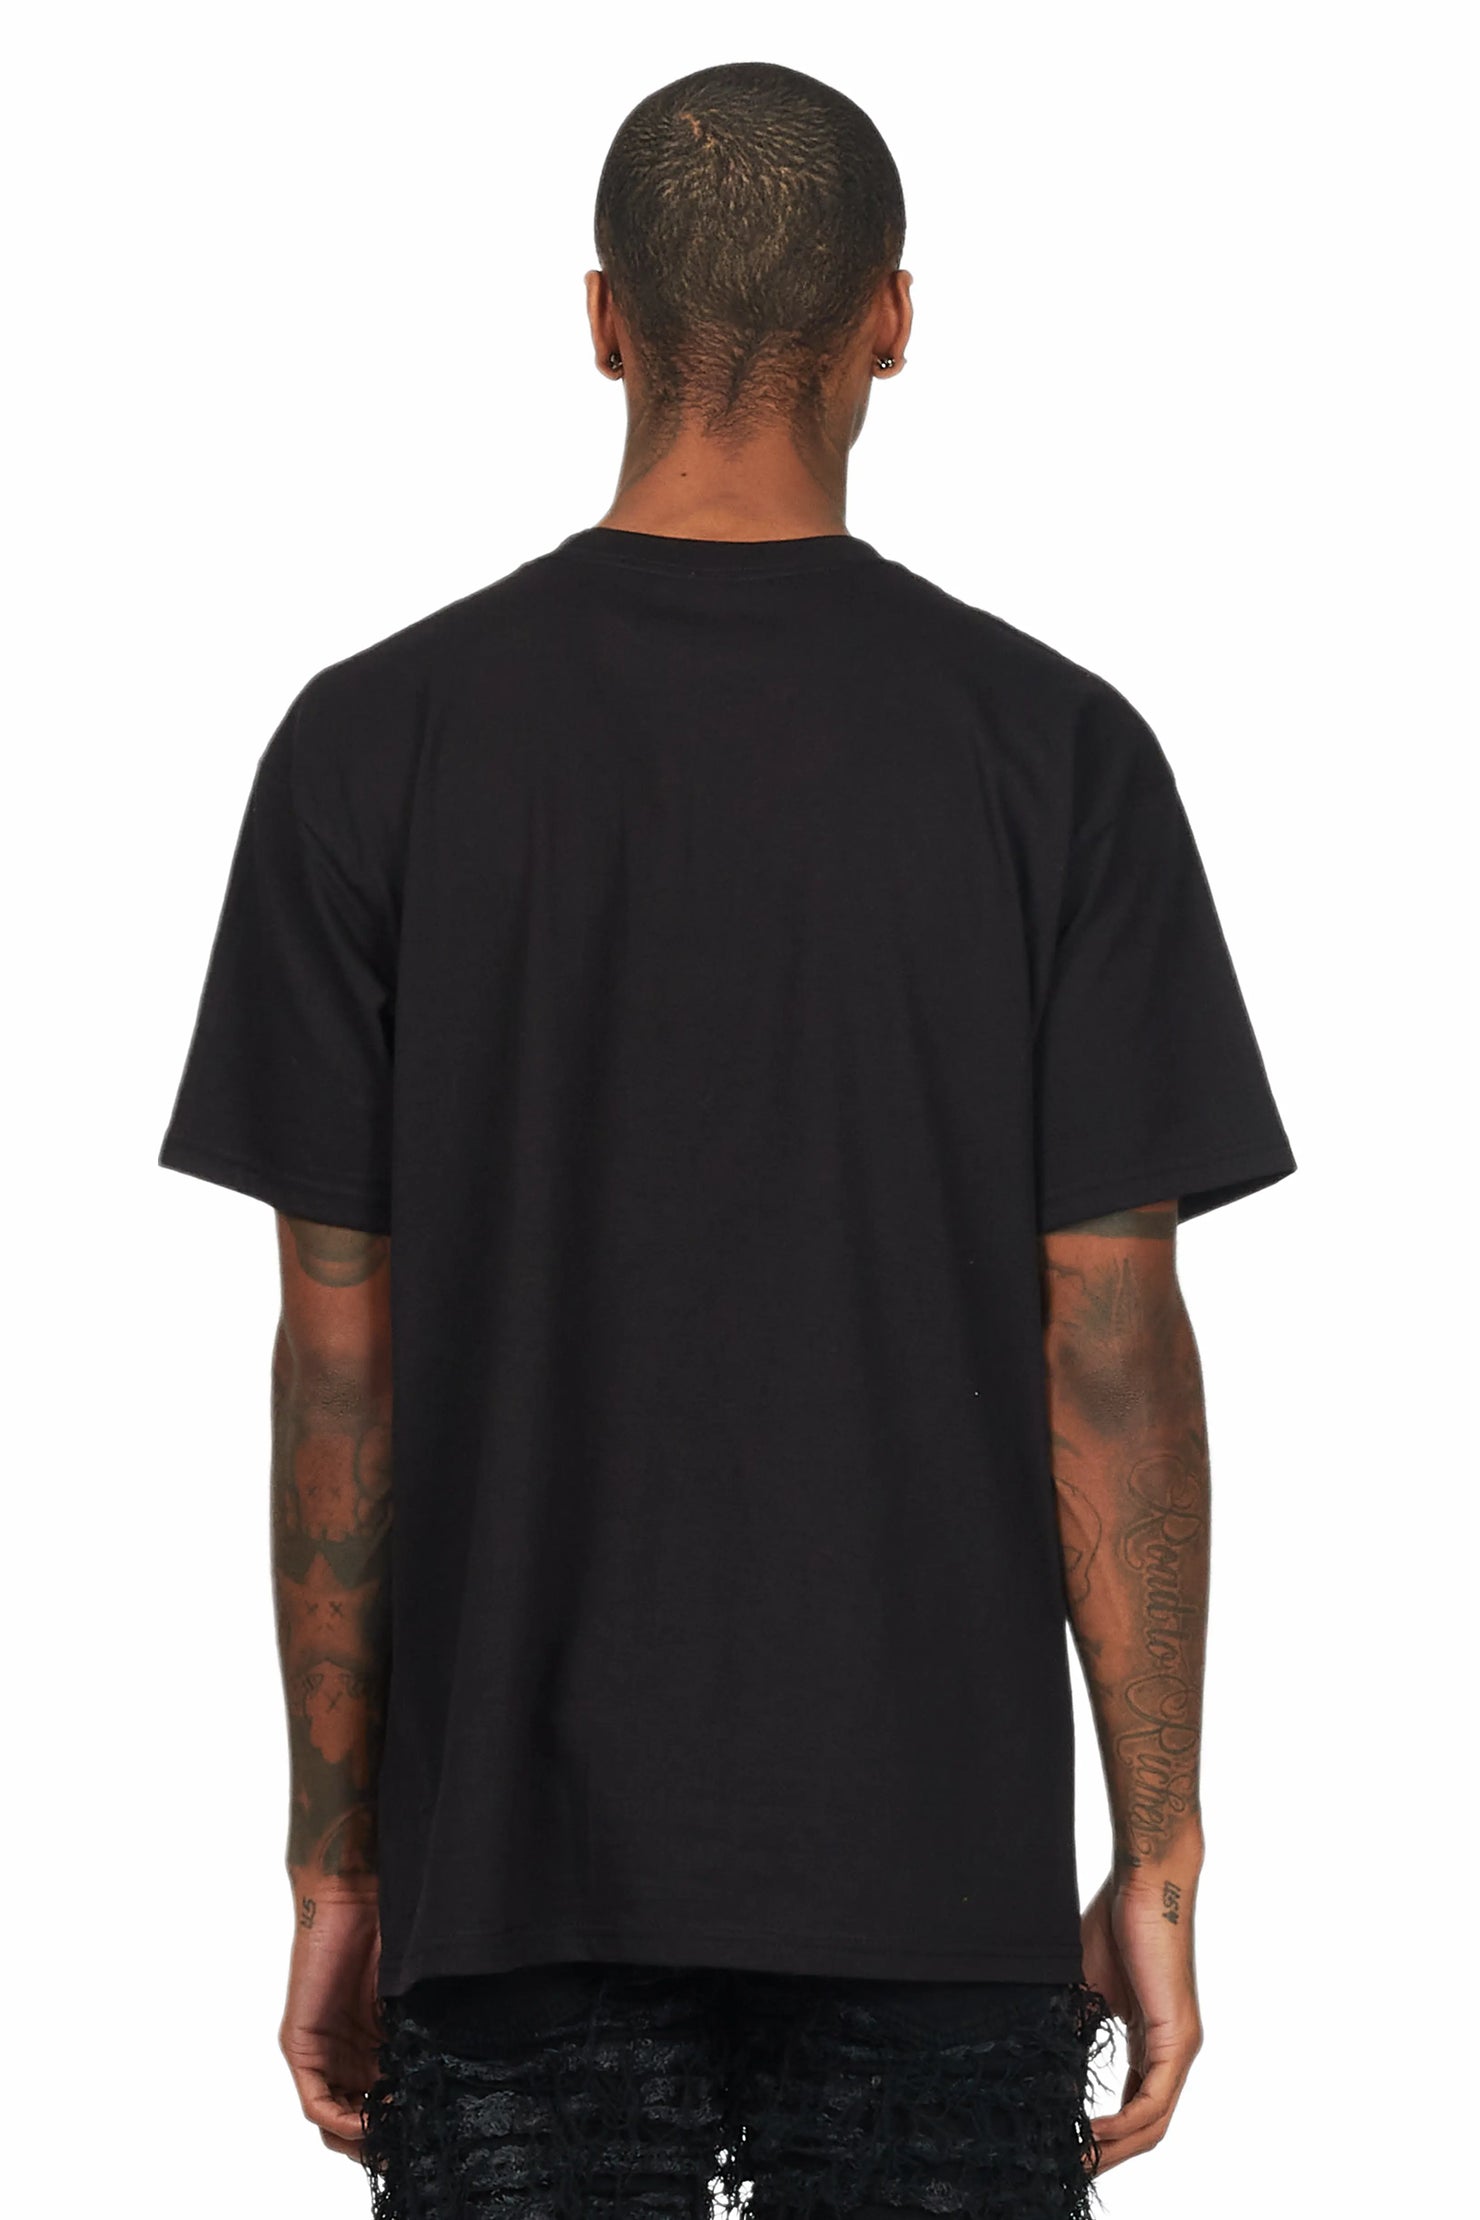 Murdra Black Graphic T-Shirt